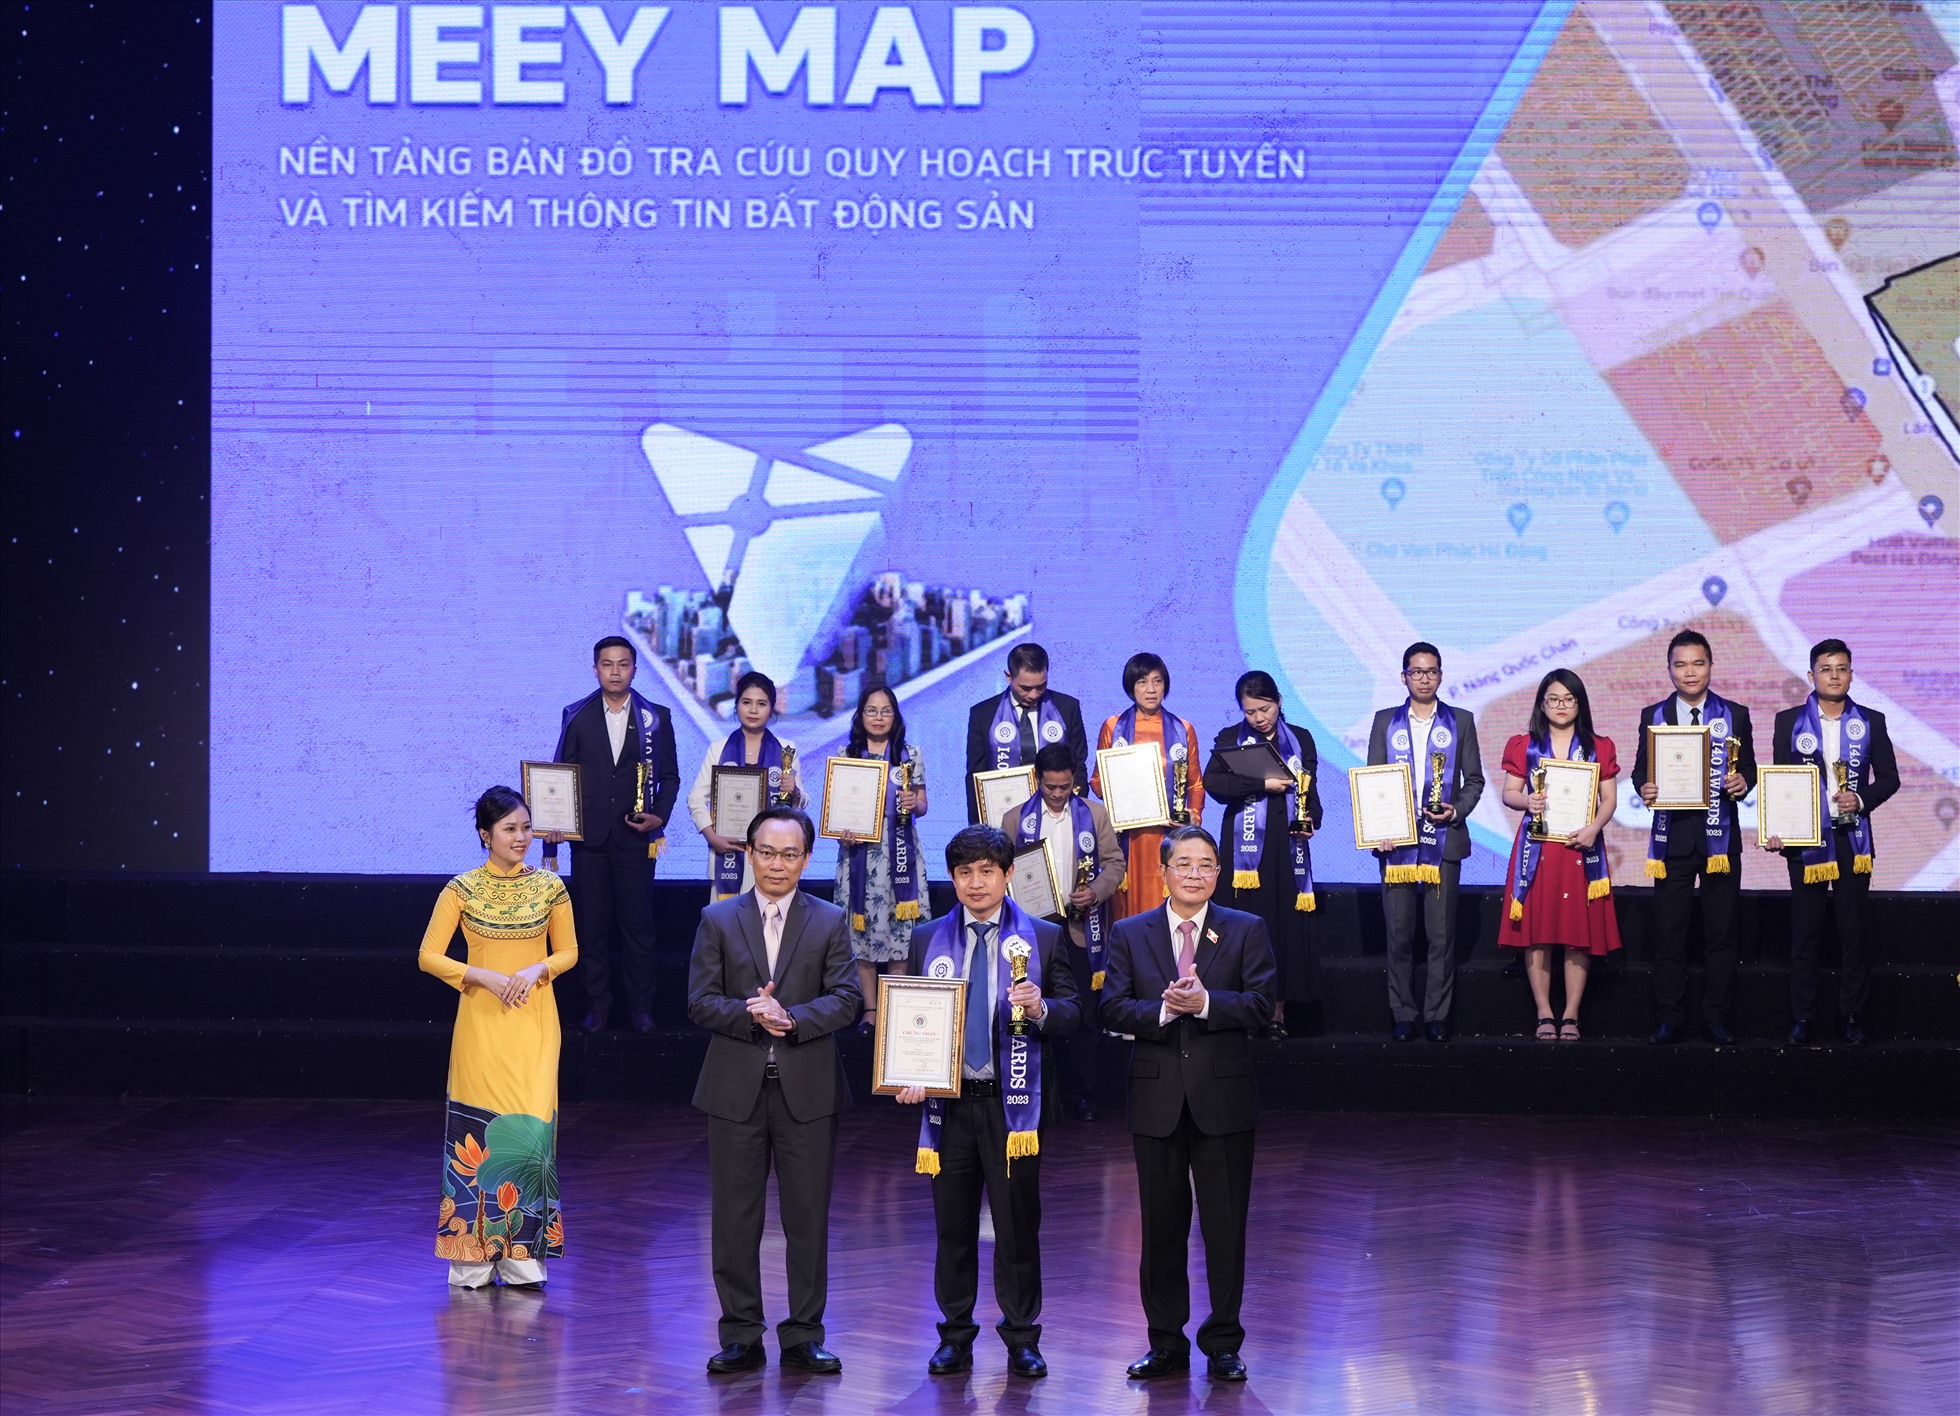 Phó Chủ tịch Quốc hội Nguyễn Đức Hải và Thứ trưởng Bộ Giáo dục và Đào tạo Hoàng Minh Sơn trao chứng nhận cho Chủ tịch Meey Land Hoàng Mai Chung.